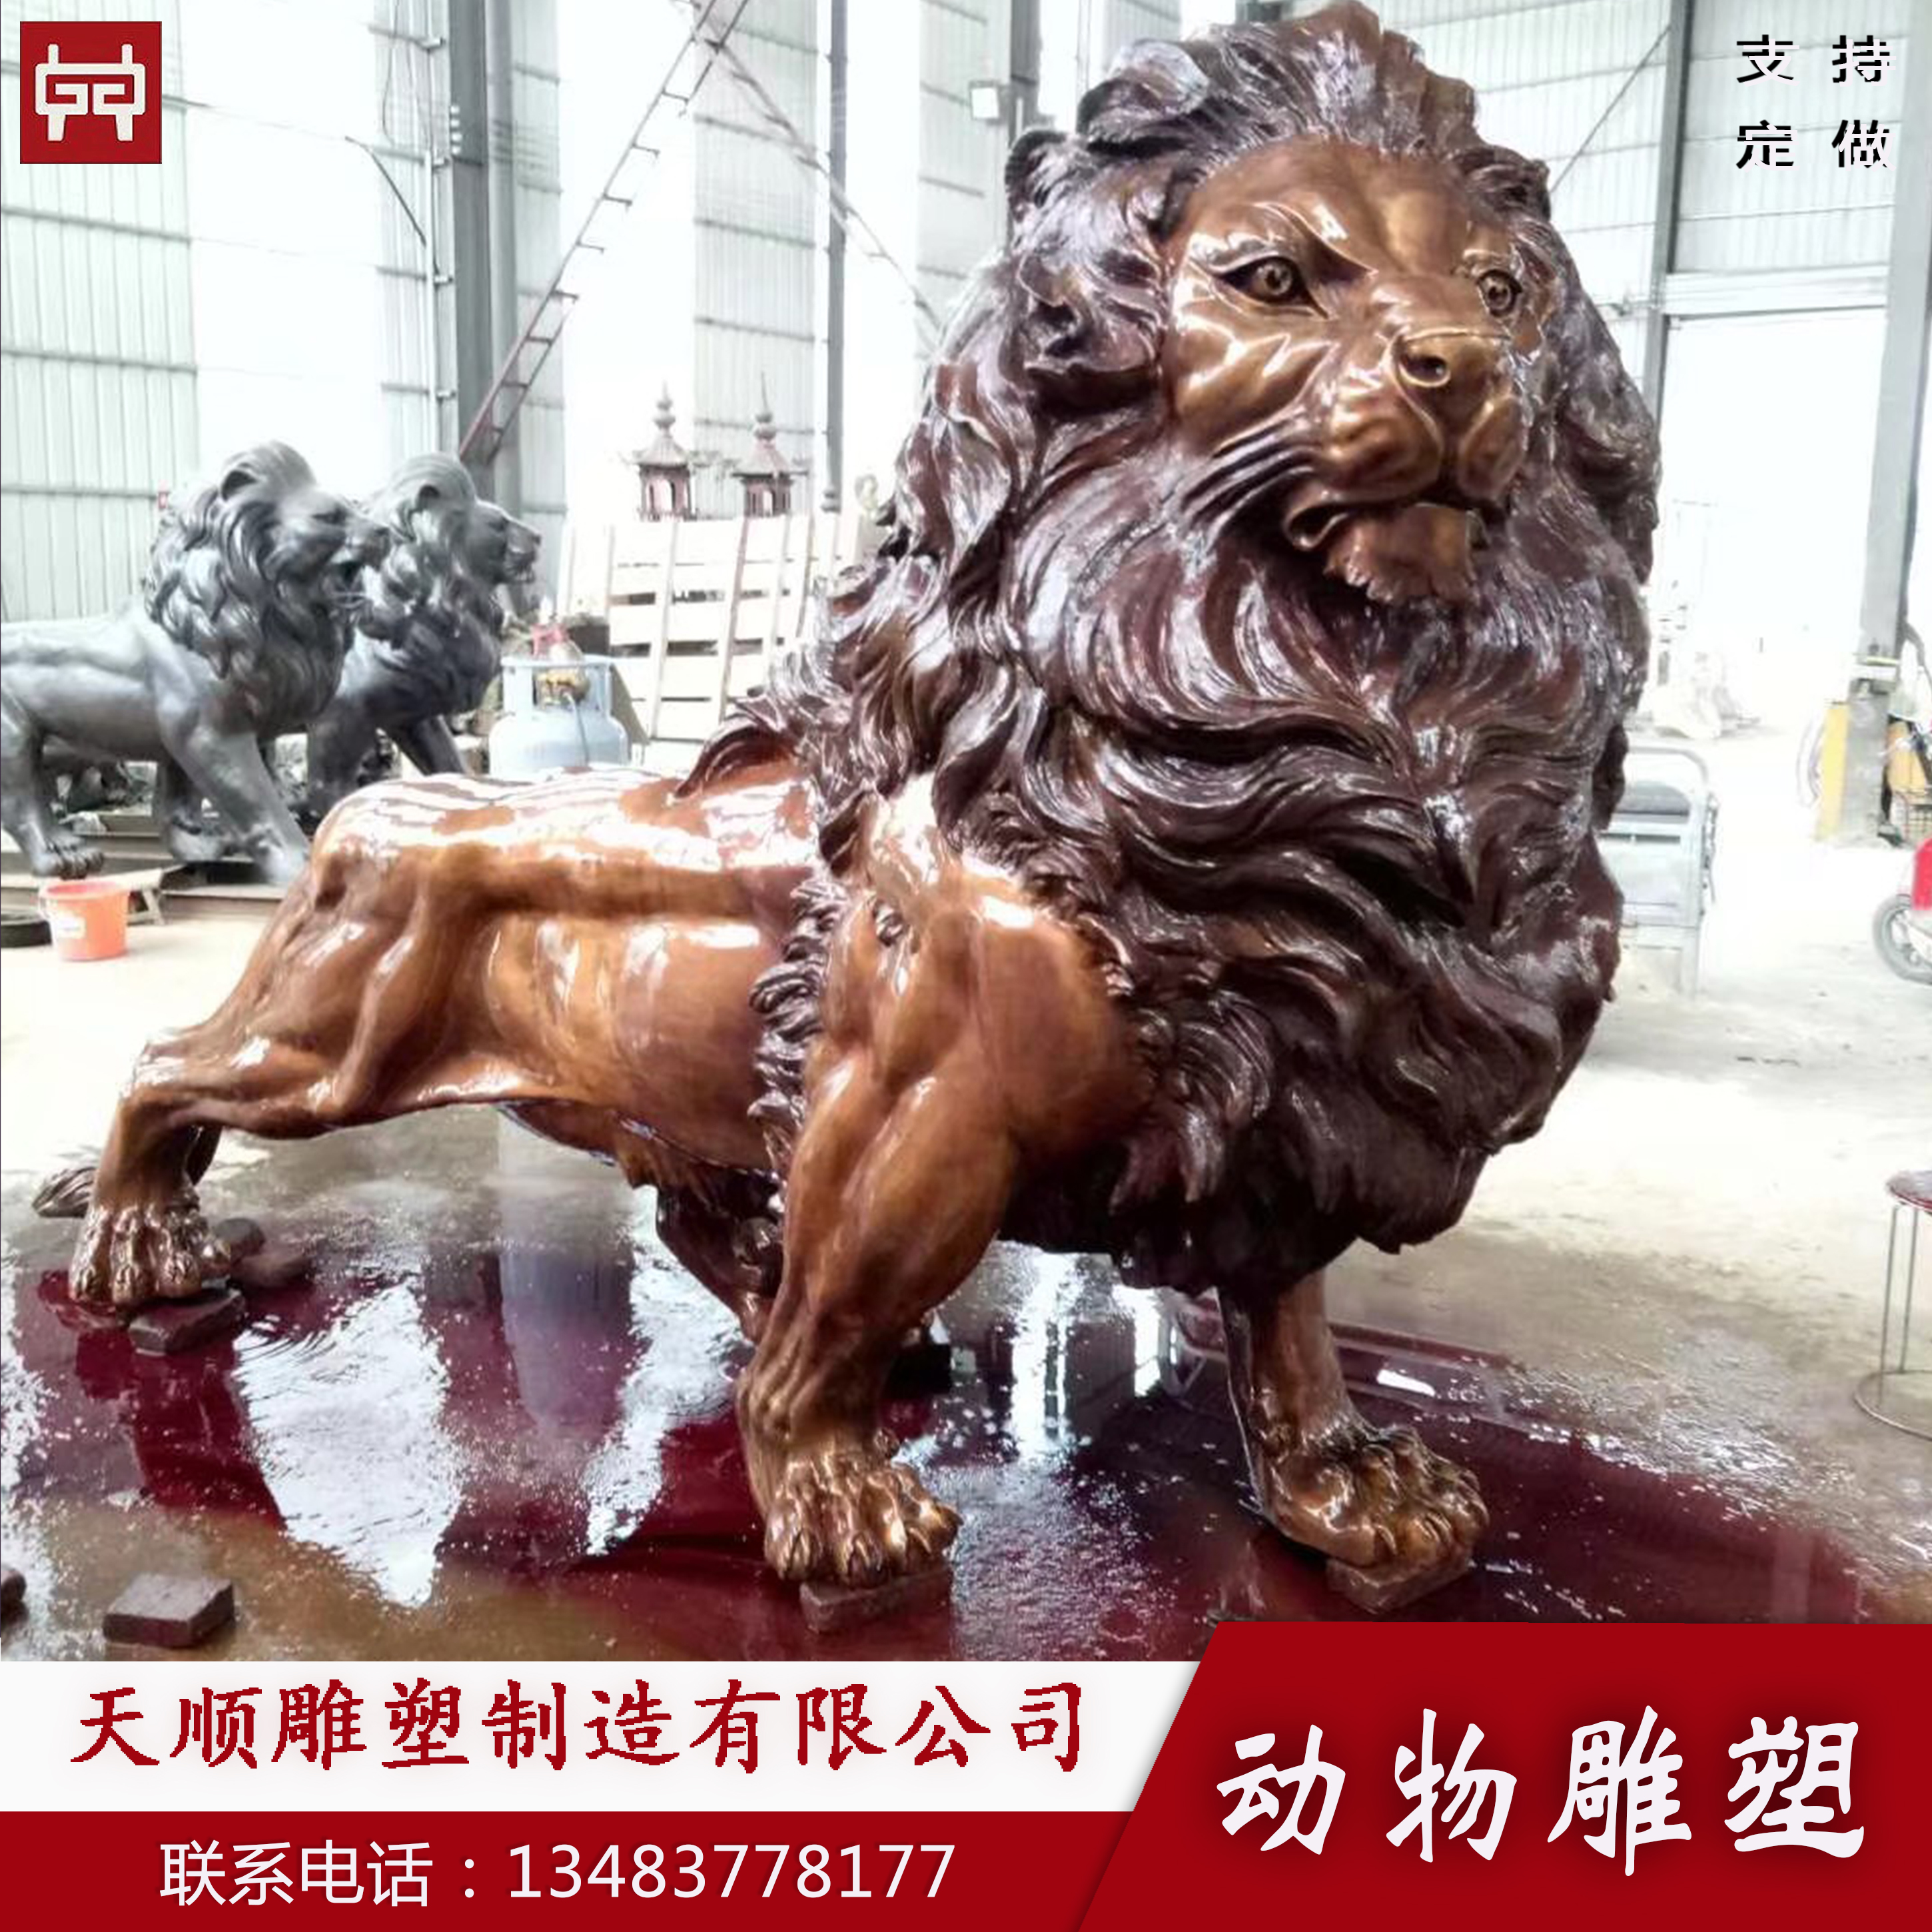 厂家定制大型铜狮子 铜雕带翅膀飞狮摆件 信誉保证